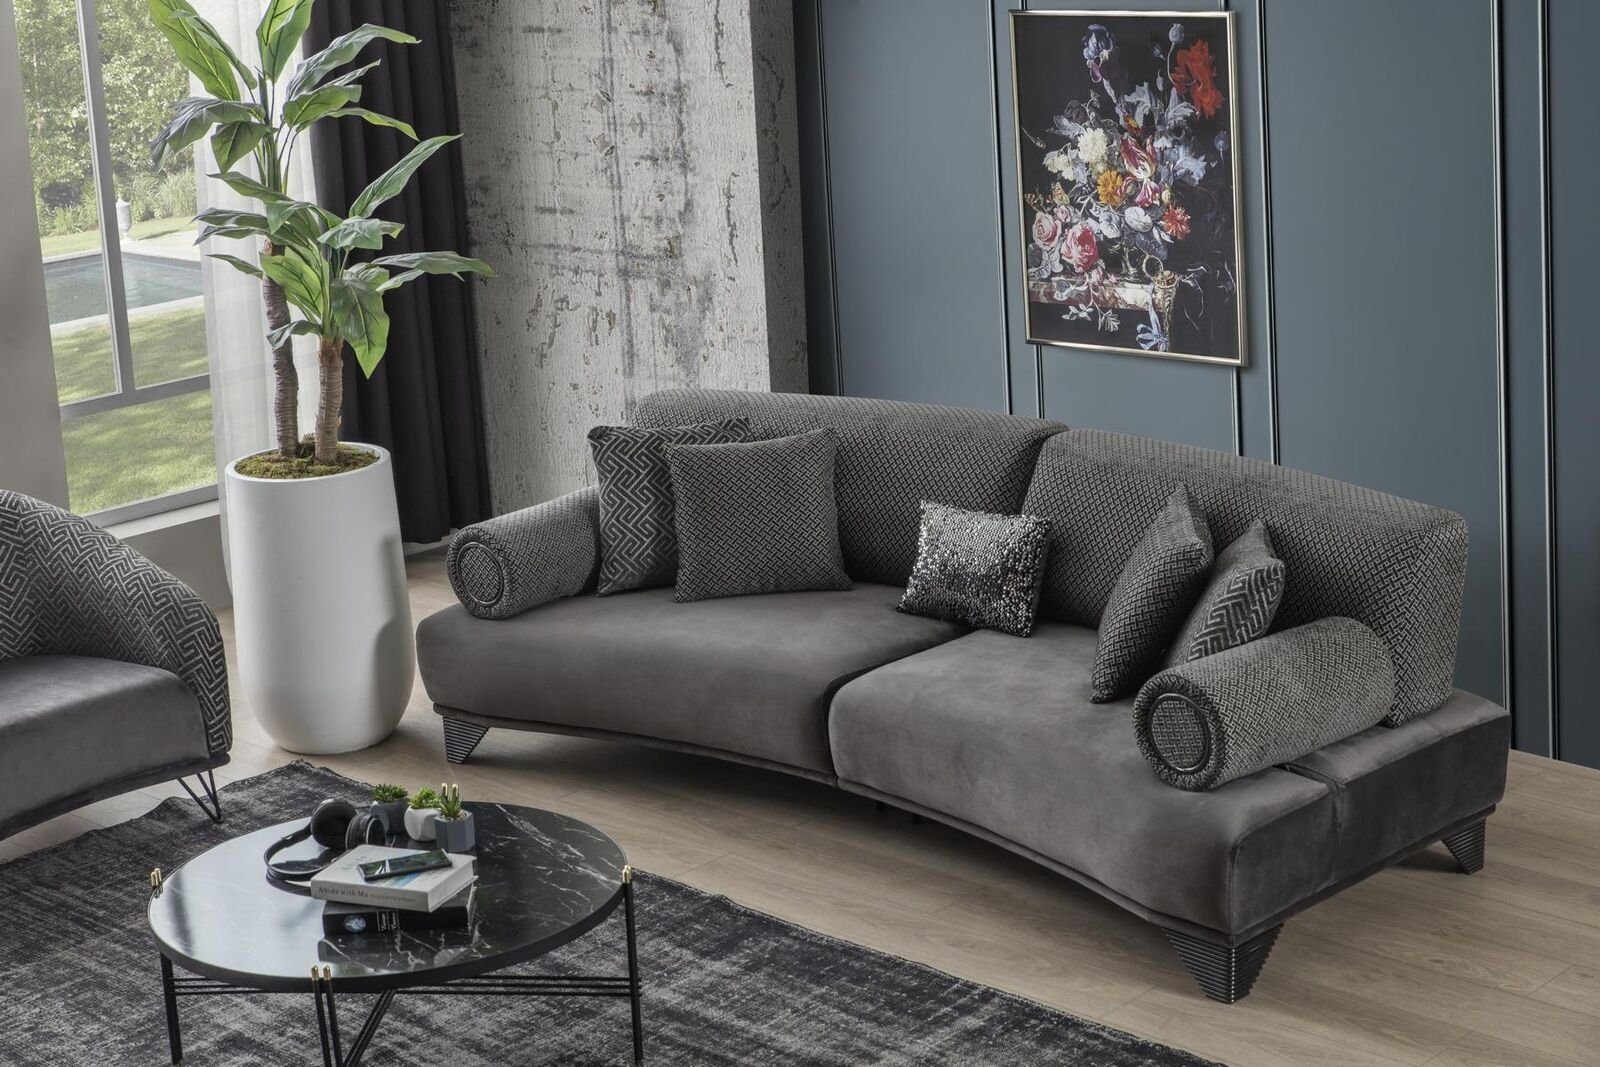 JVmoebel Sofa Luxus Sofa Design Stoff Dreisitzer Gebogene Couch Wohnzimmer